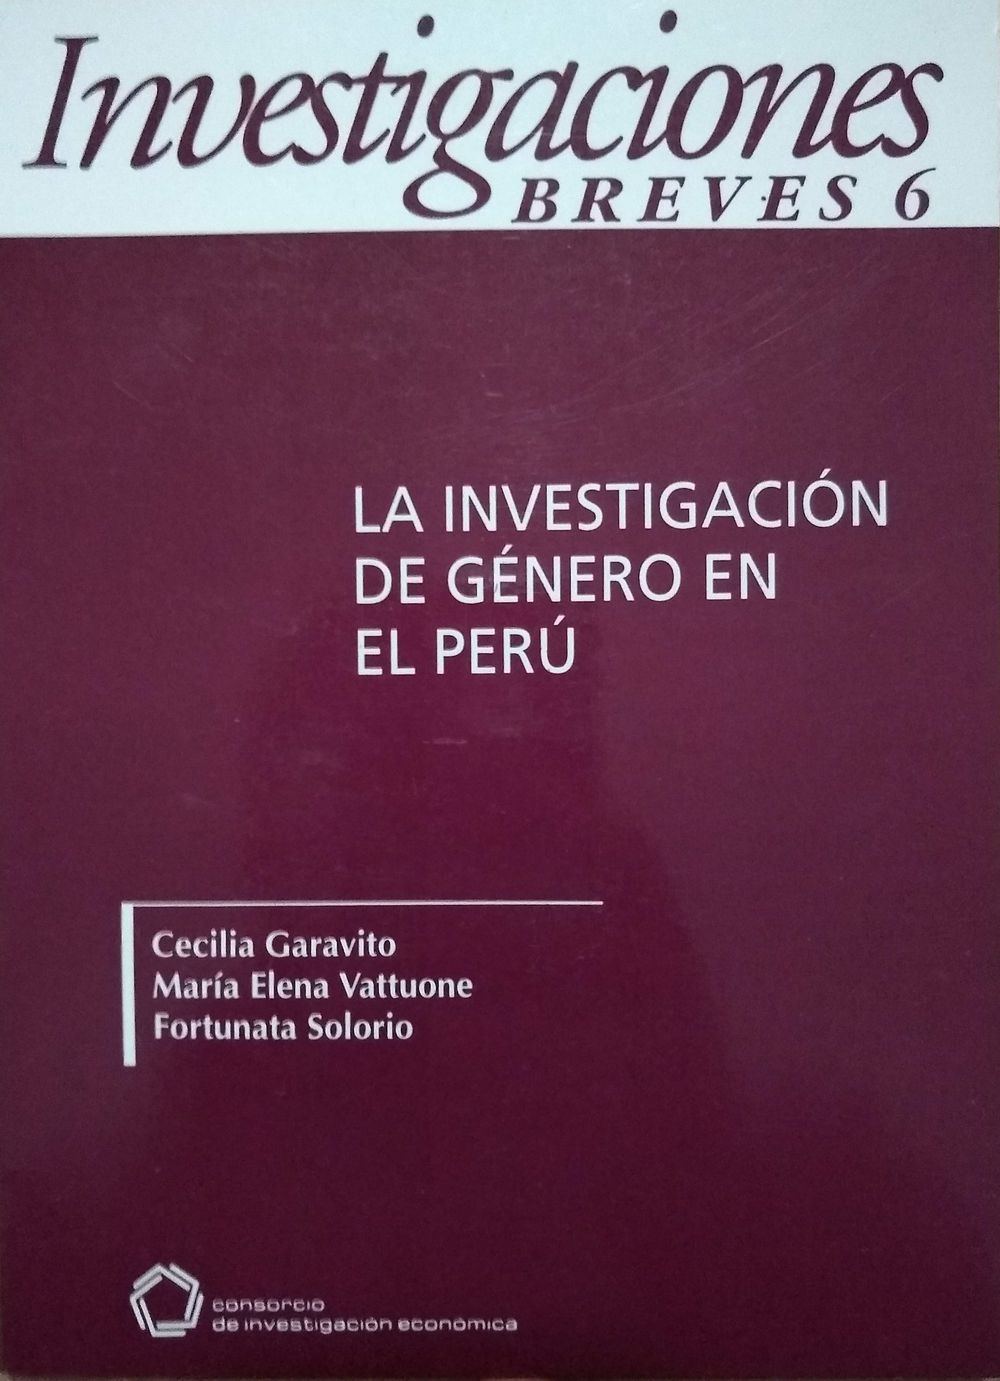 La investigación de género en el Perú